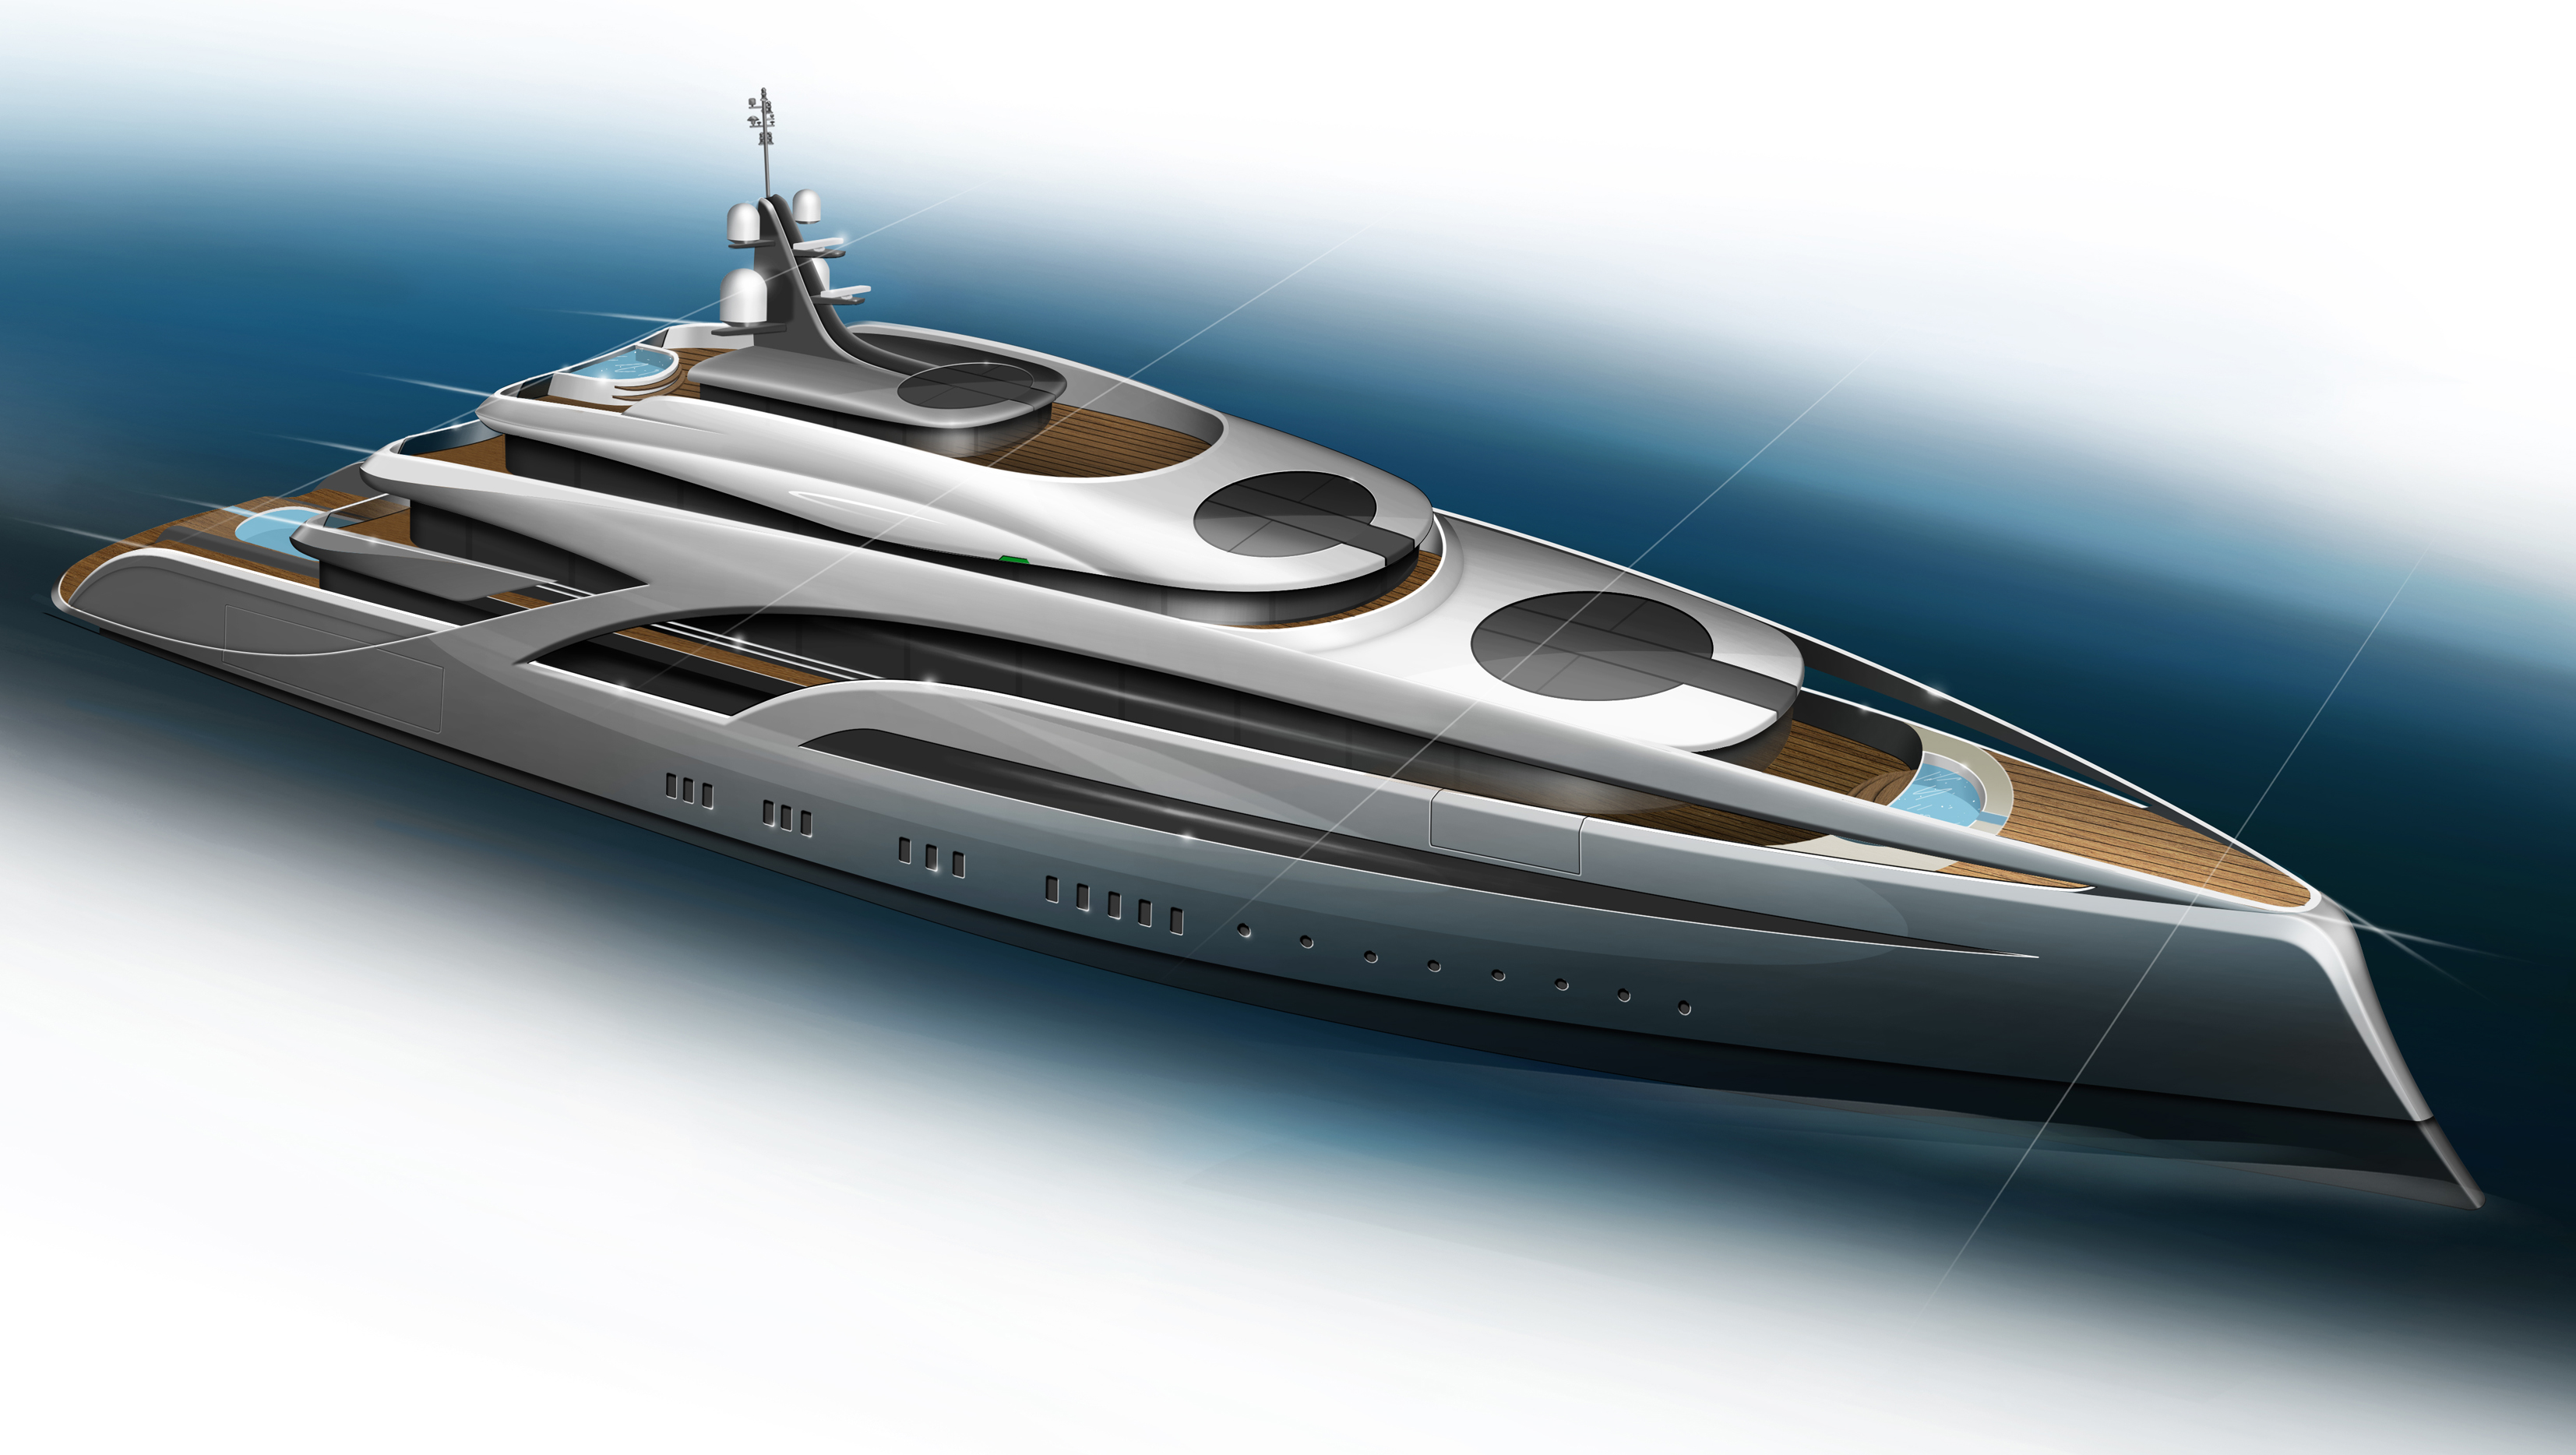 tony castro design yachts